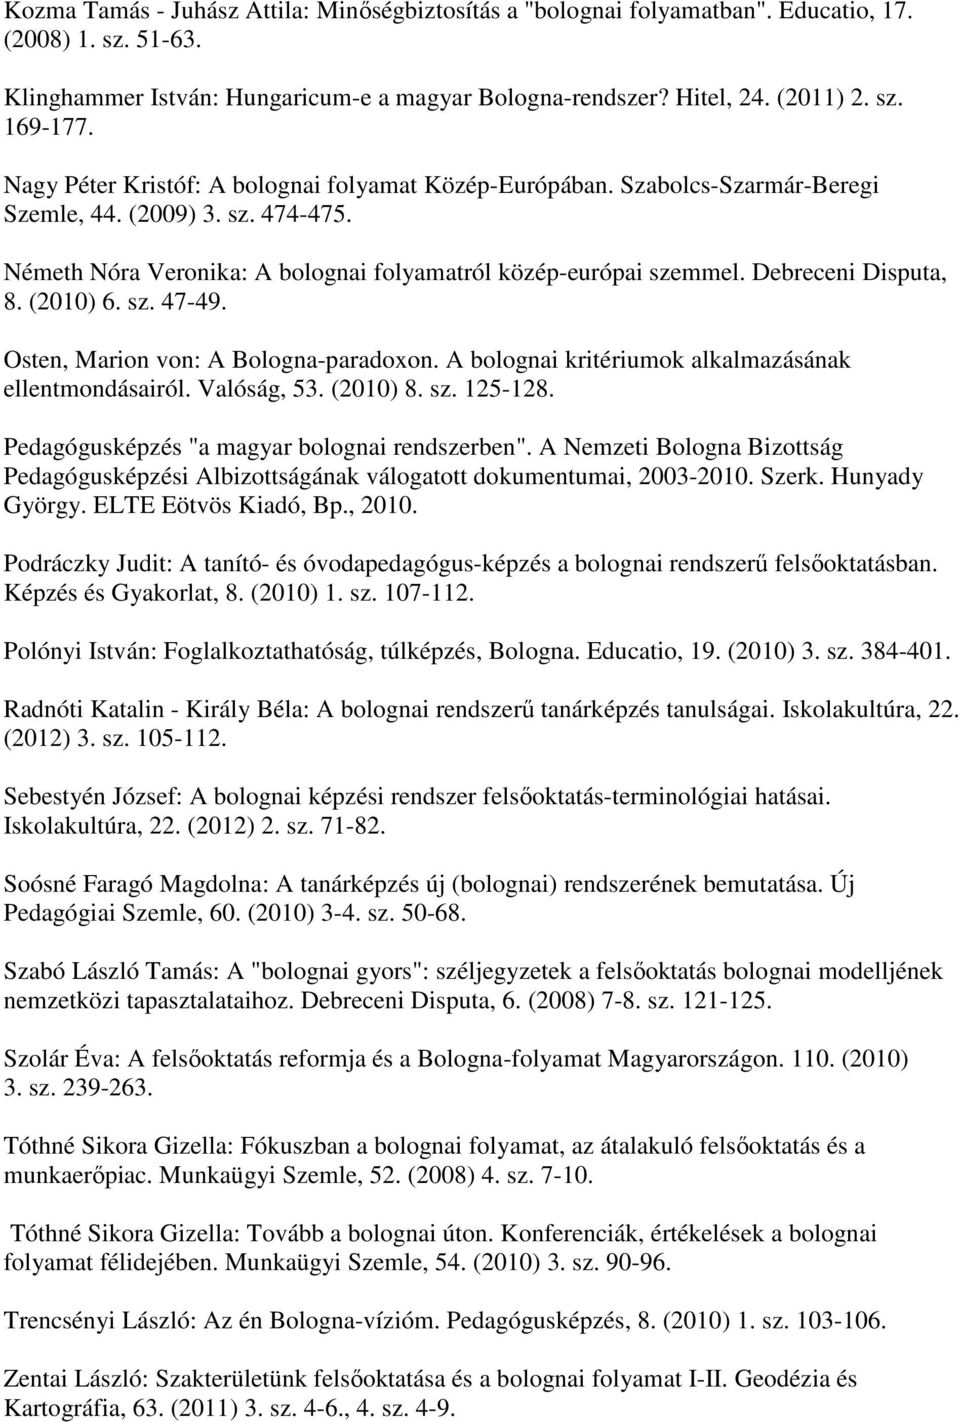 Debreceni Disputa, 8. (2010) 6. sz. 47-49. Osten, Marion von: A Bologna-paradoxon. A bolognai kritériumok alkalmazásának ellentmondásairól. Valóság, 53. (2010) 8. sz. 125-128.